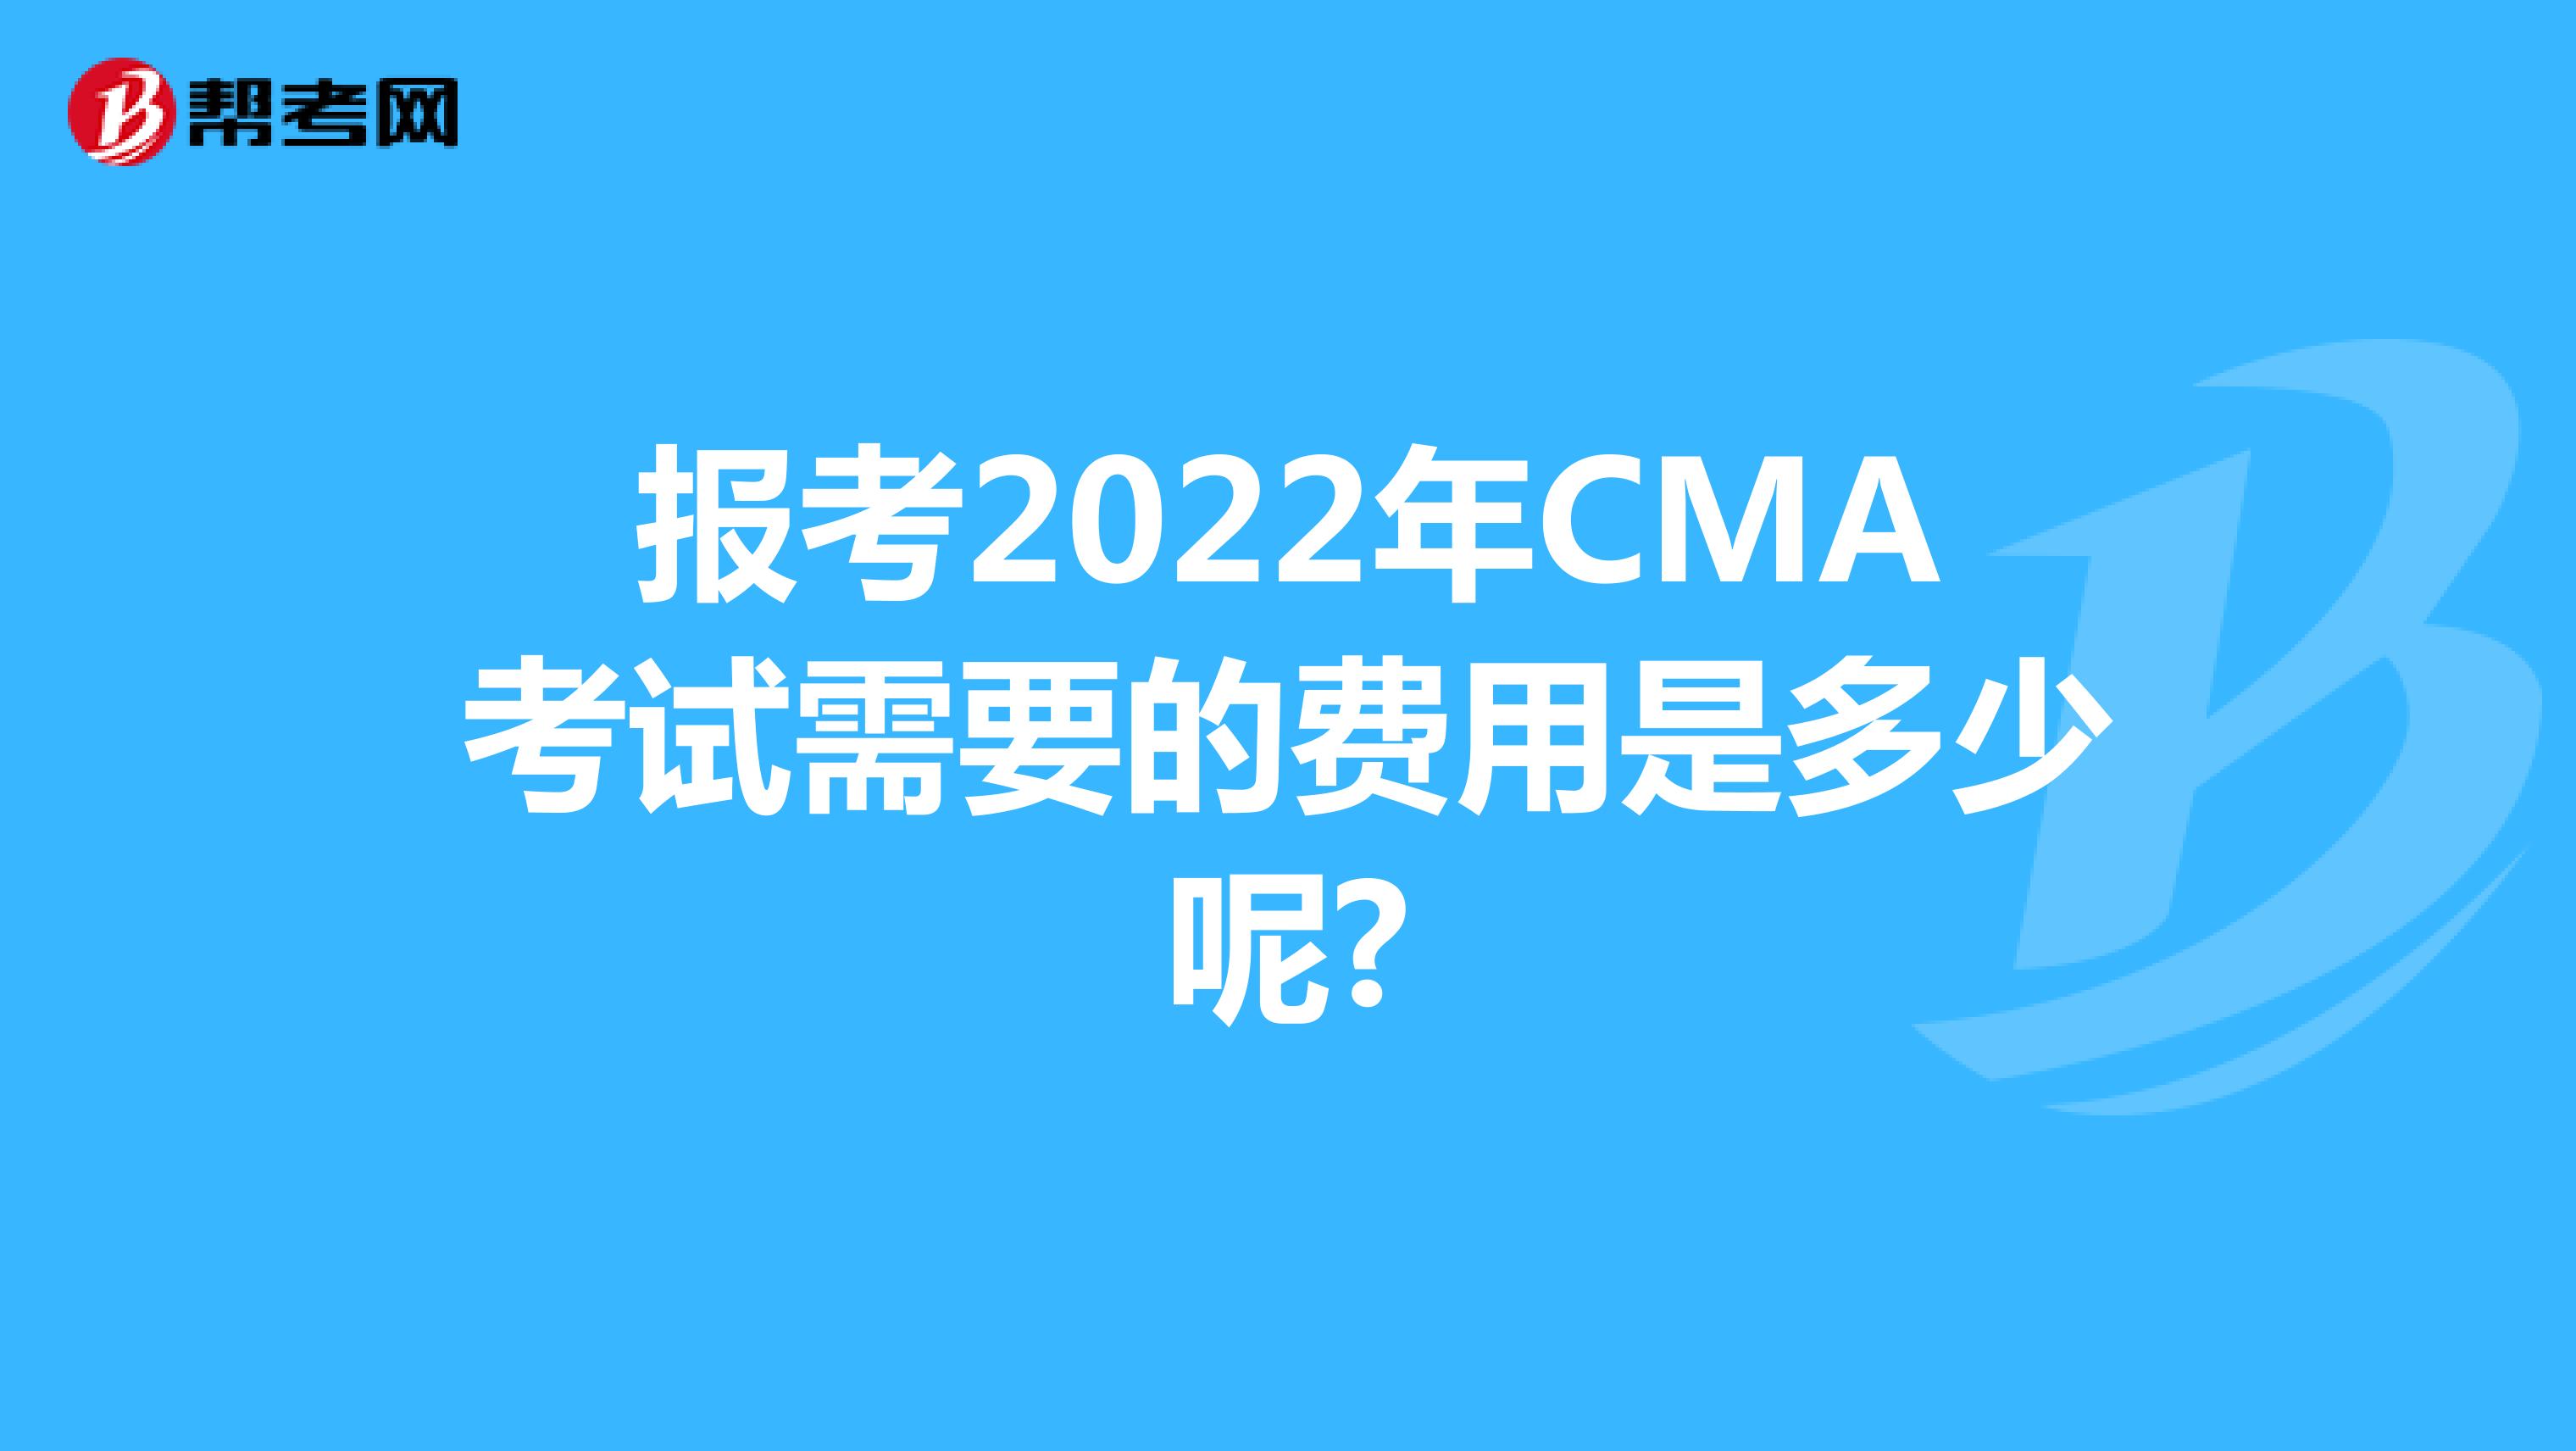 报考2022年CMA考试需要的费用是多少呢?